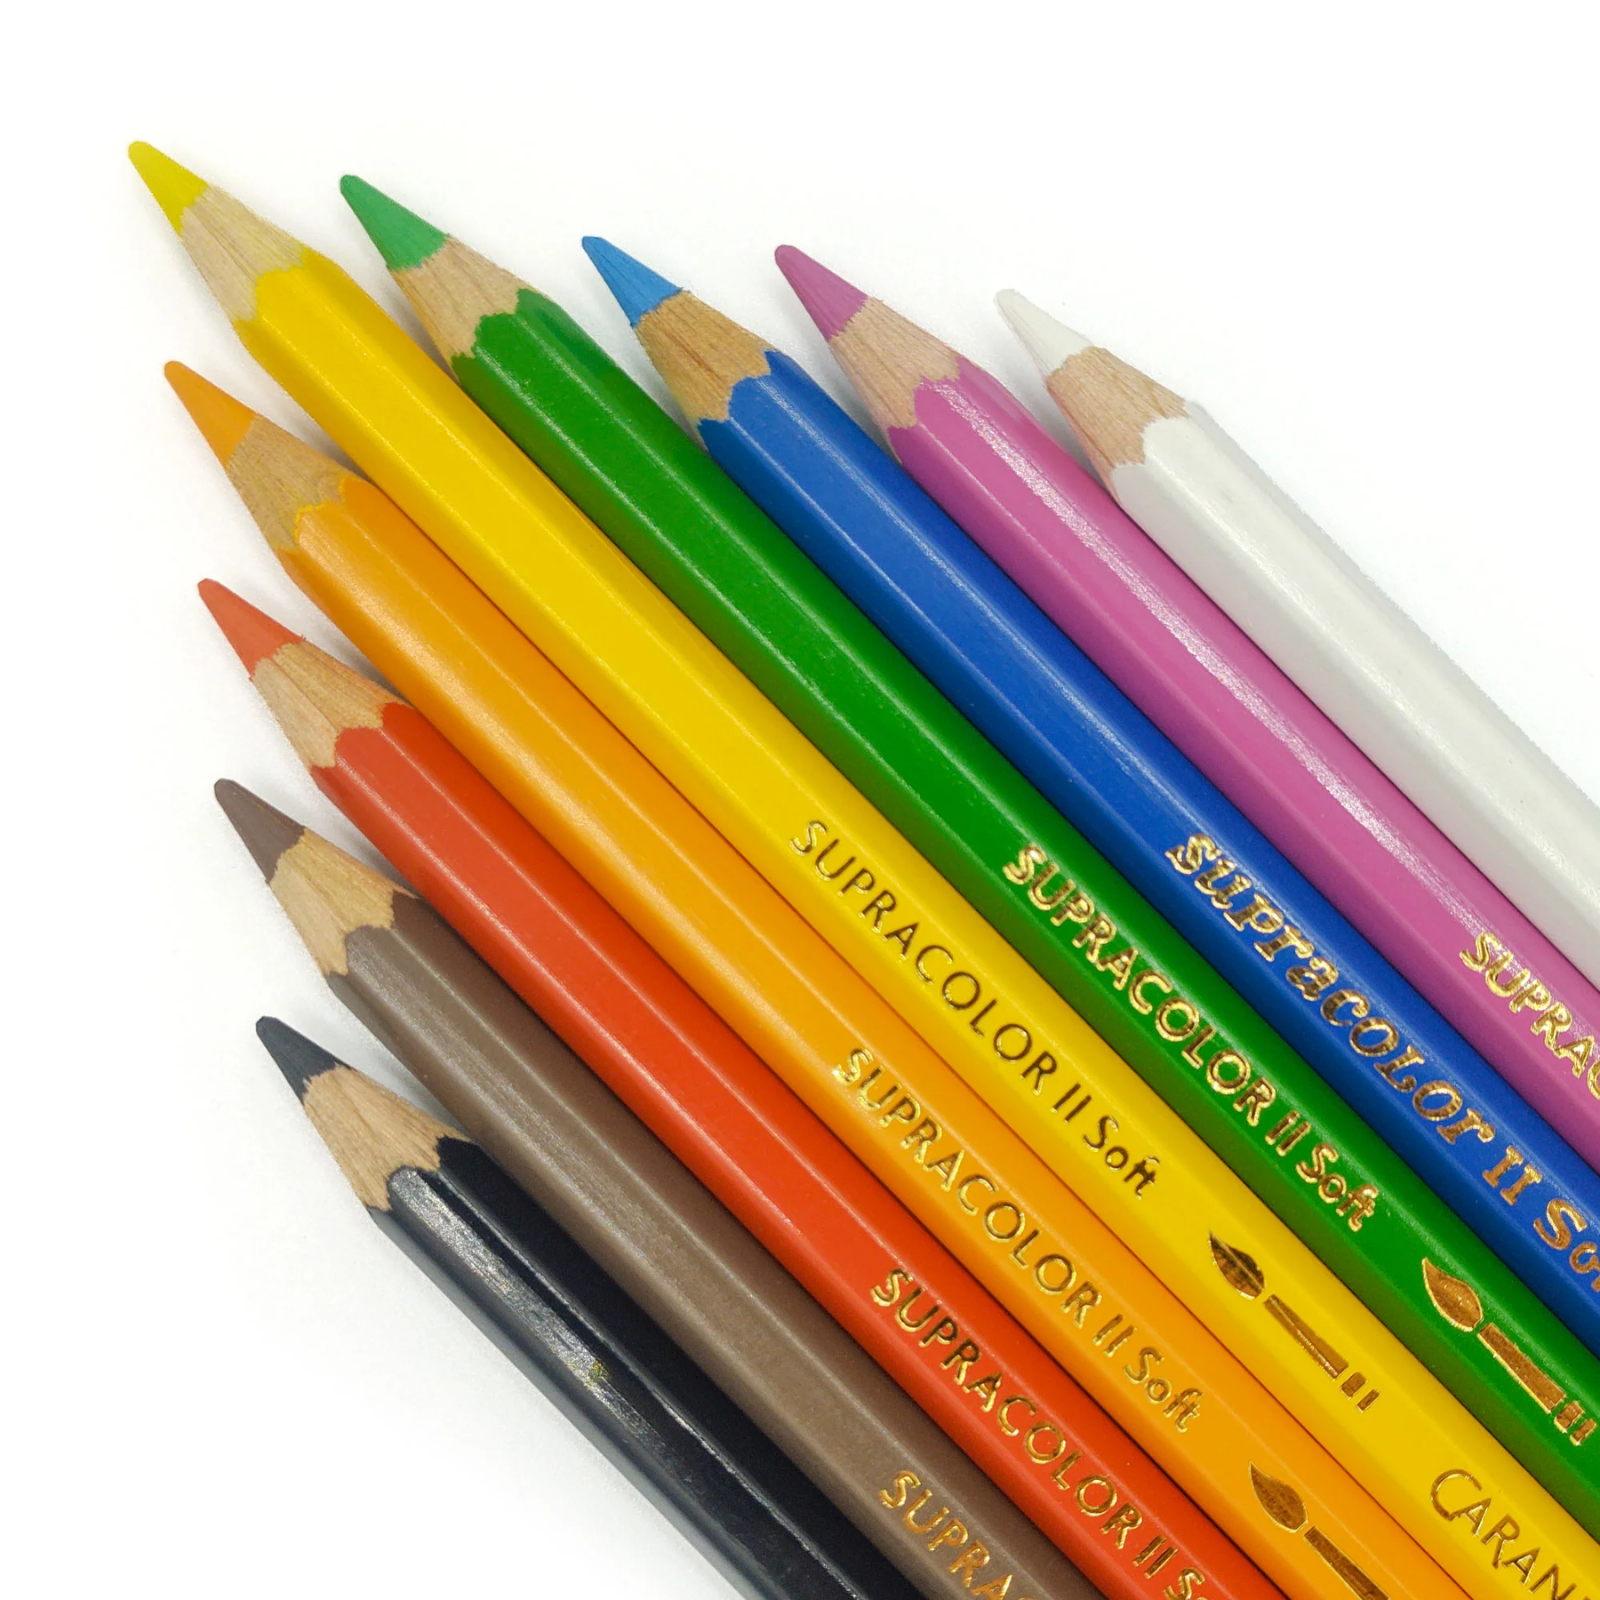 Caran d'Ache Supracolor Soft Aquarelle Watercolour Pencil Set